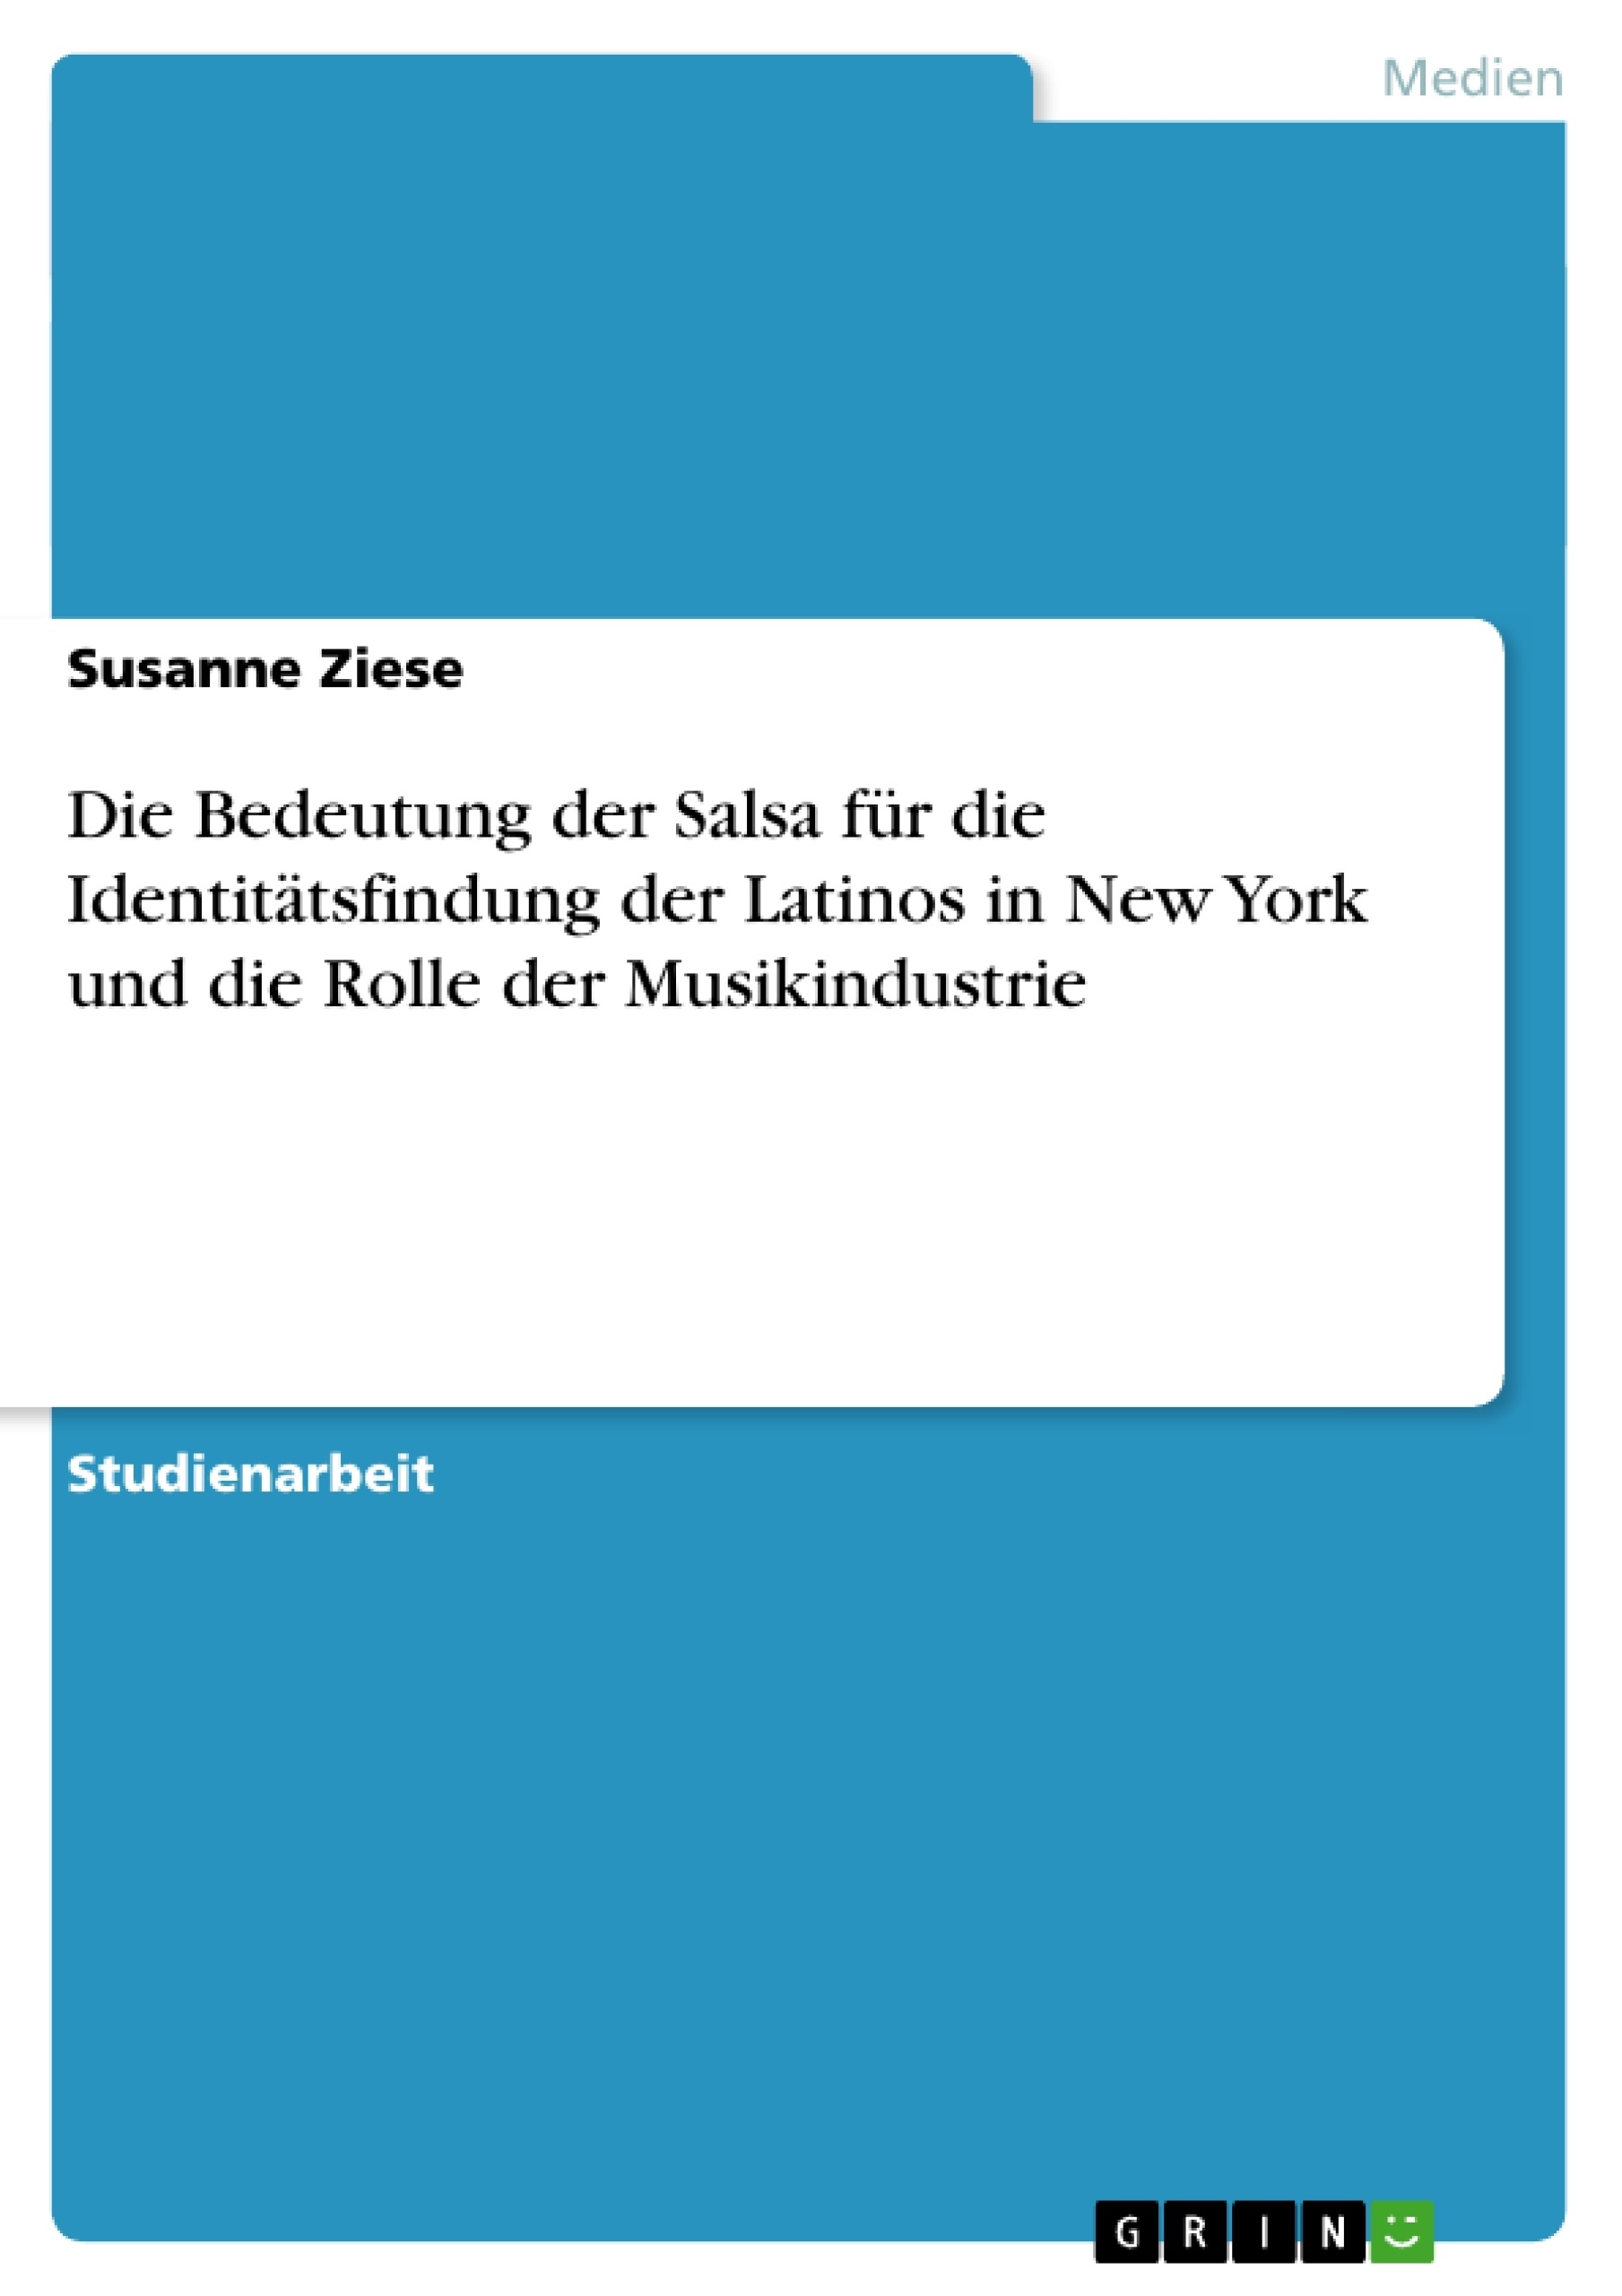 Title: Die Bedeutung der Salsa für die Identitätsfindung der Latinos in New York und die Rolle der Musikindustrie